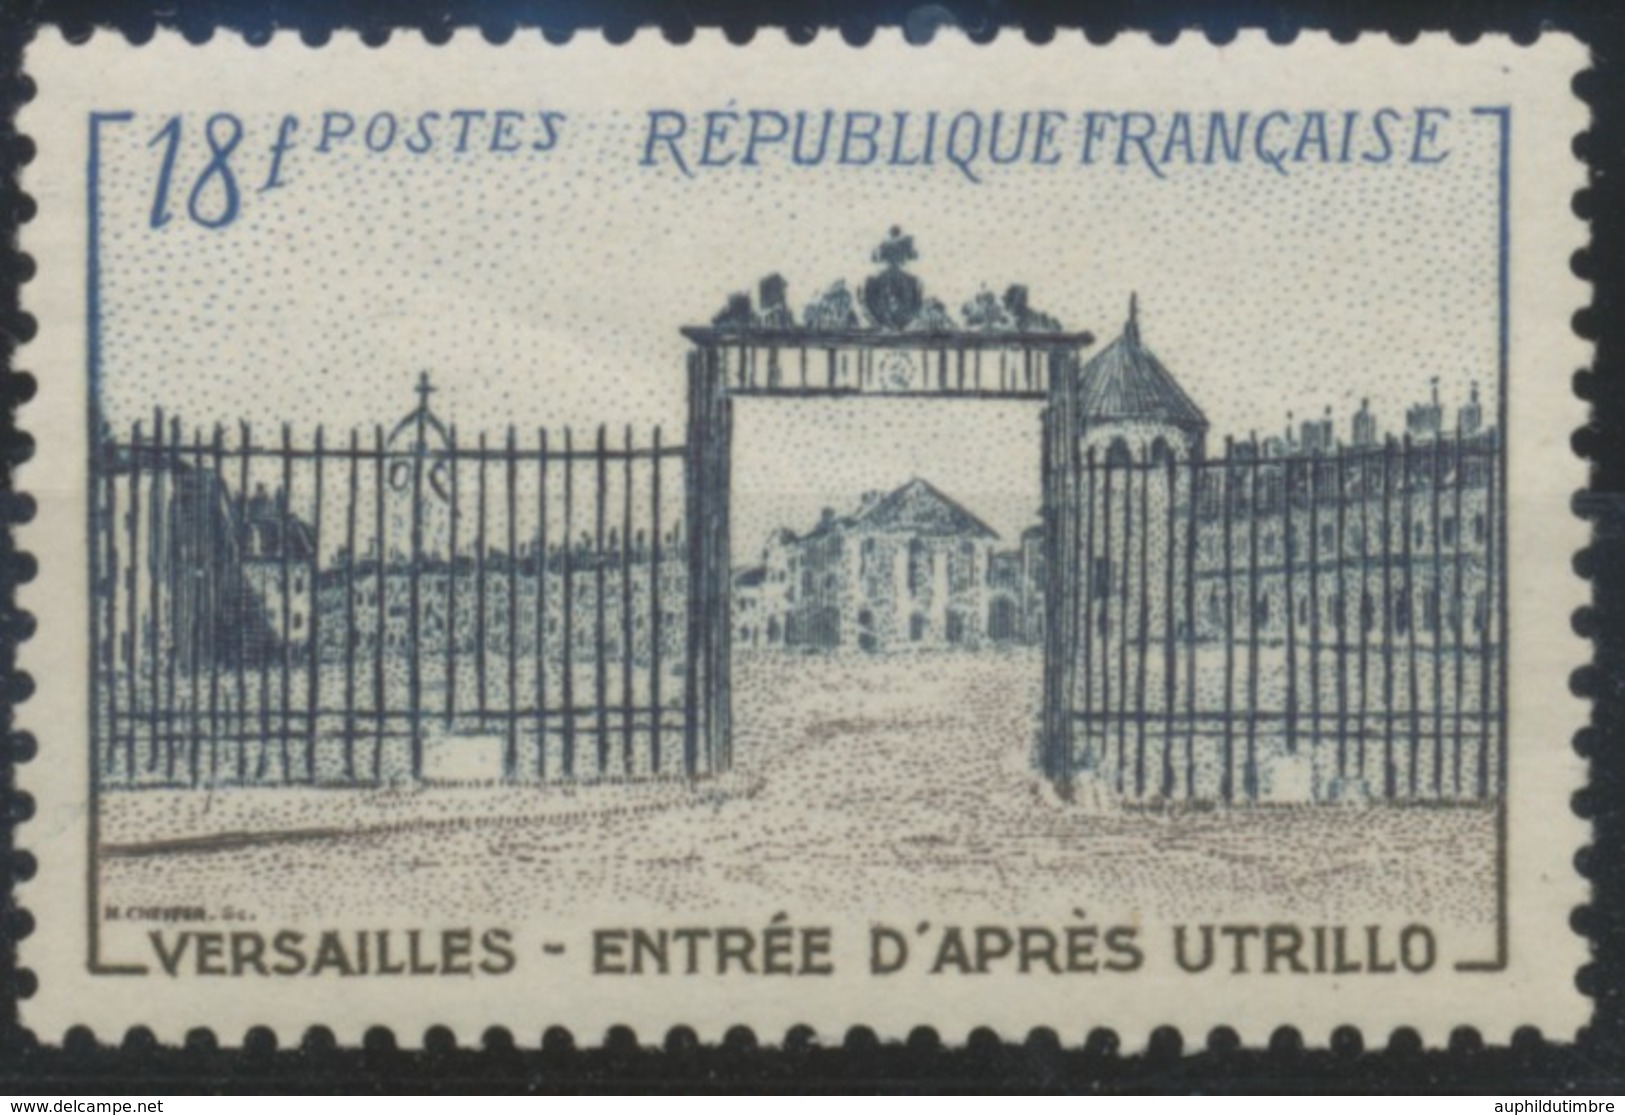 Grille D'entrée Du Château De Versailles. Type De 1952 (no 939) 18f. Brun-lilas, Bleu-noir Et Bleu. Neuf Luxe ** Y988 - Nuevos